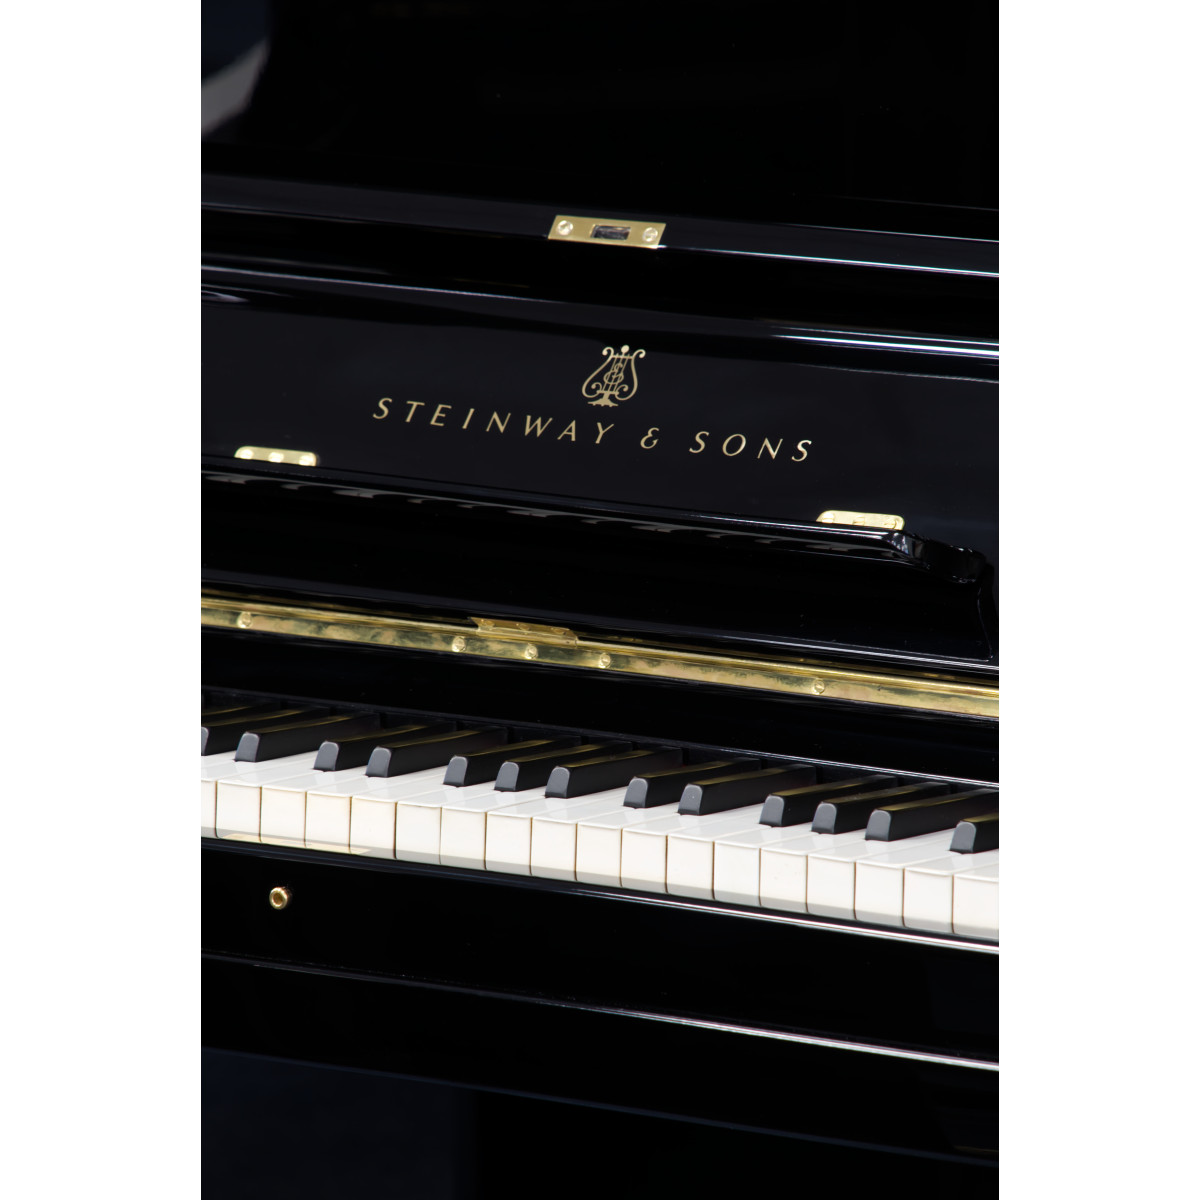 Steinway & Sons Klavier, Modell K, 132 cm, gebraucht, Bj. 1912, Ansicht: Klaviatur